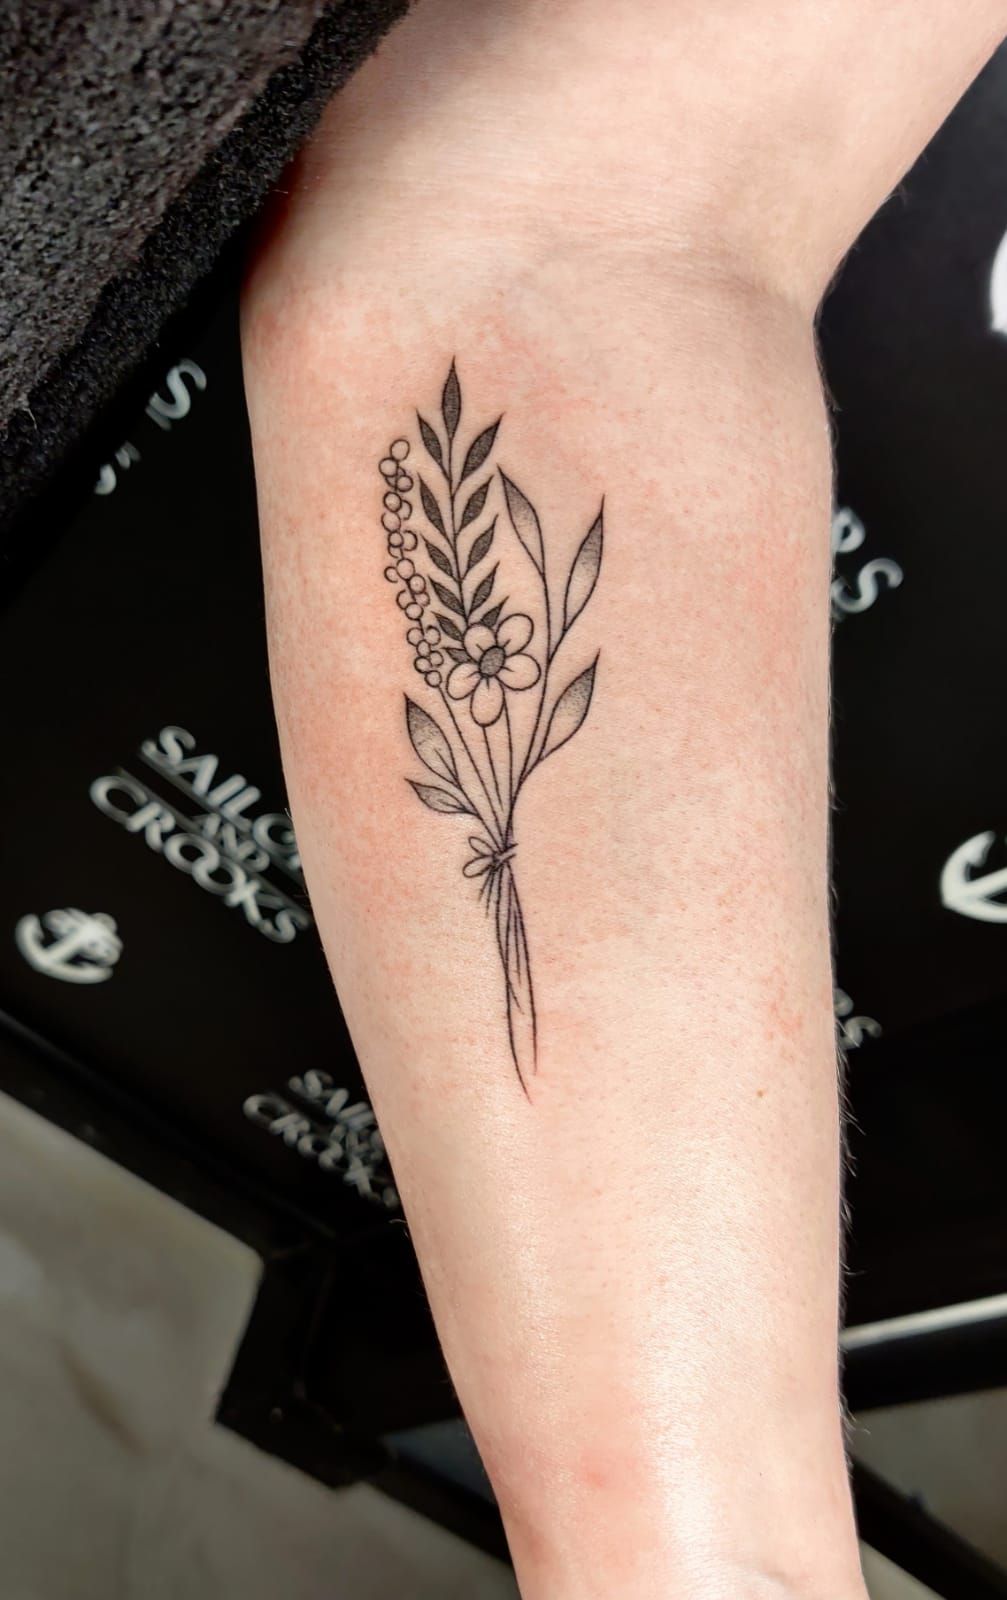 Pin by Vagna Pessôa on °º¤ø,¸¸,ø¤º°`°º¤ø,¸Tattoos,¸¸,ø¤º°`°º¤ø,¸ | Tattoo  design for hand, Tattoos for daughters, Mini tattoos